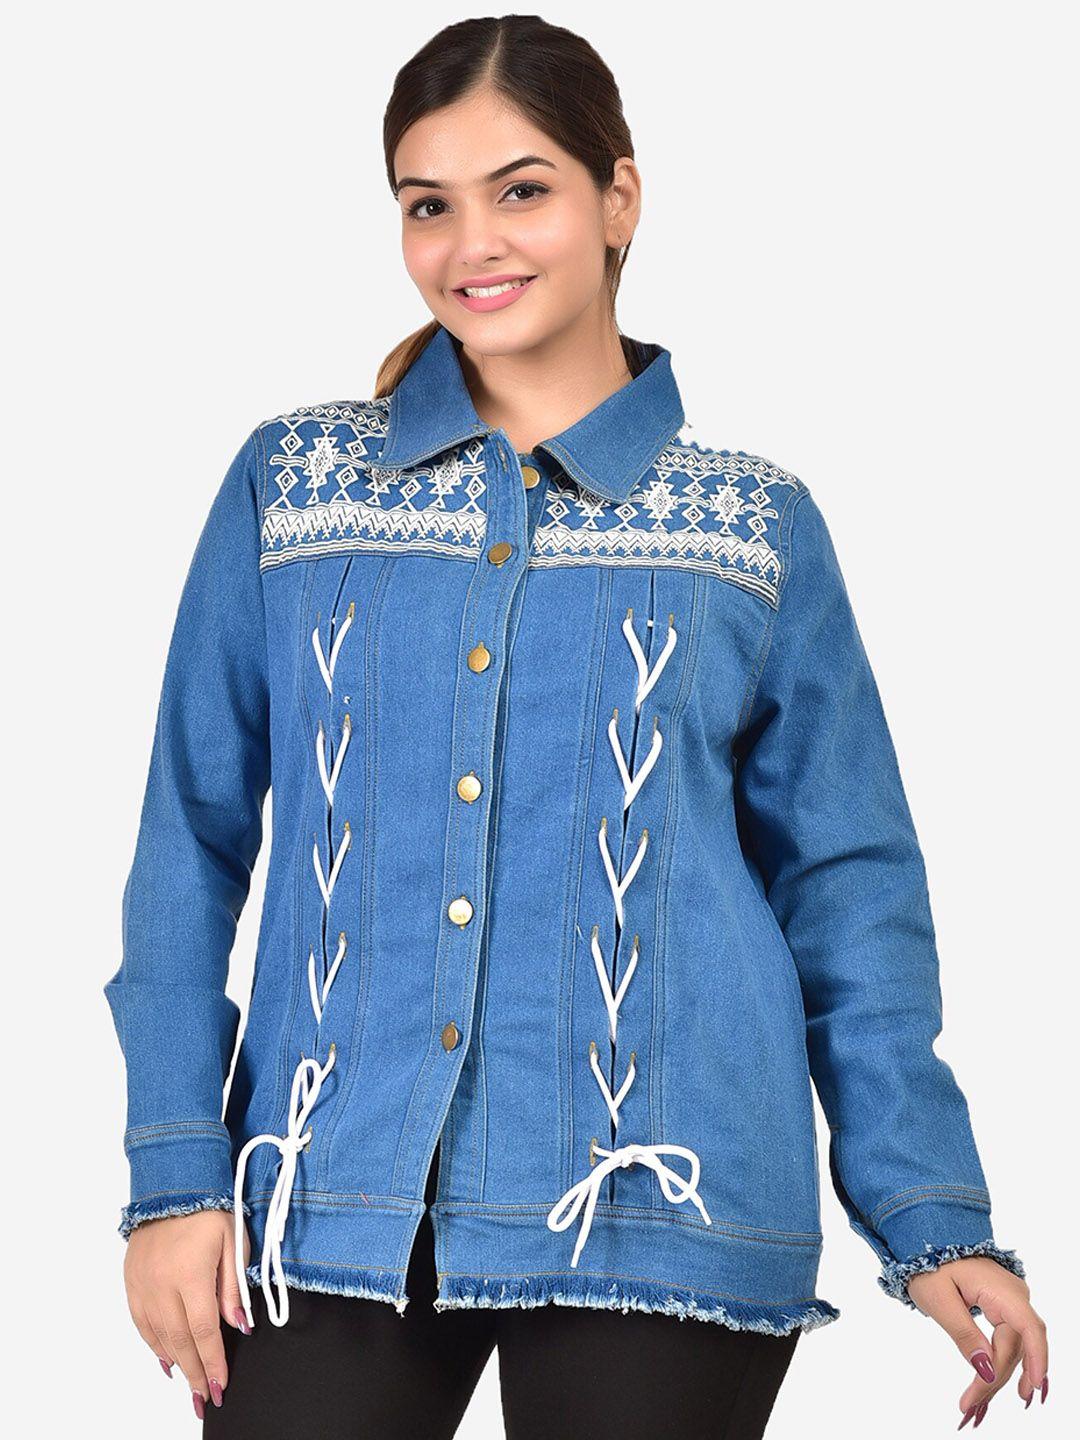 sumavi-fashion printed denim jacket